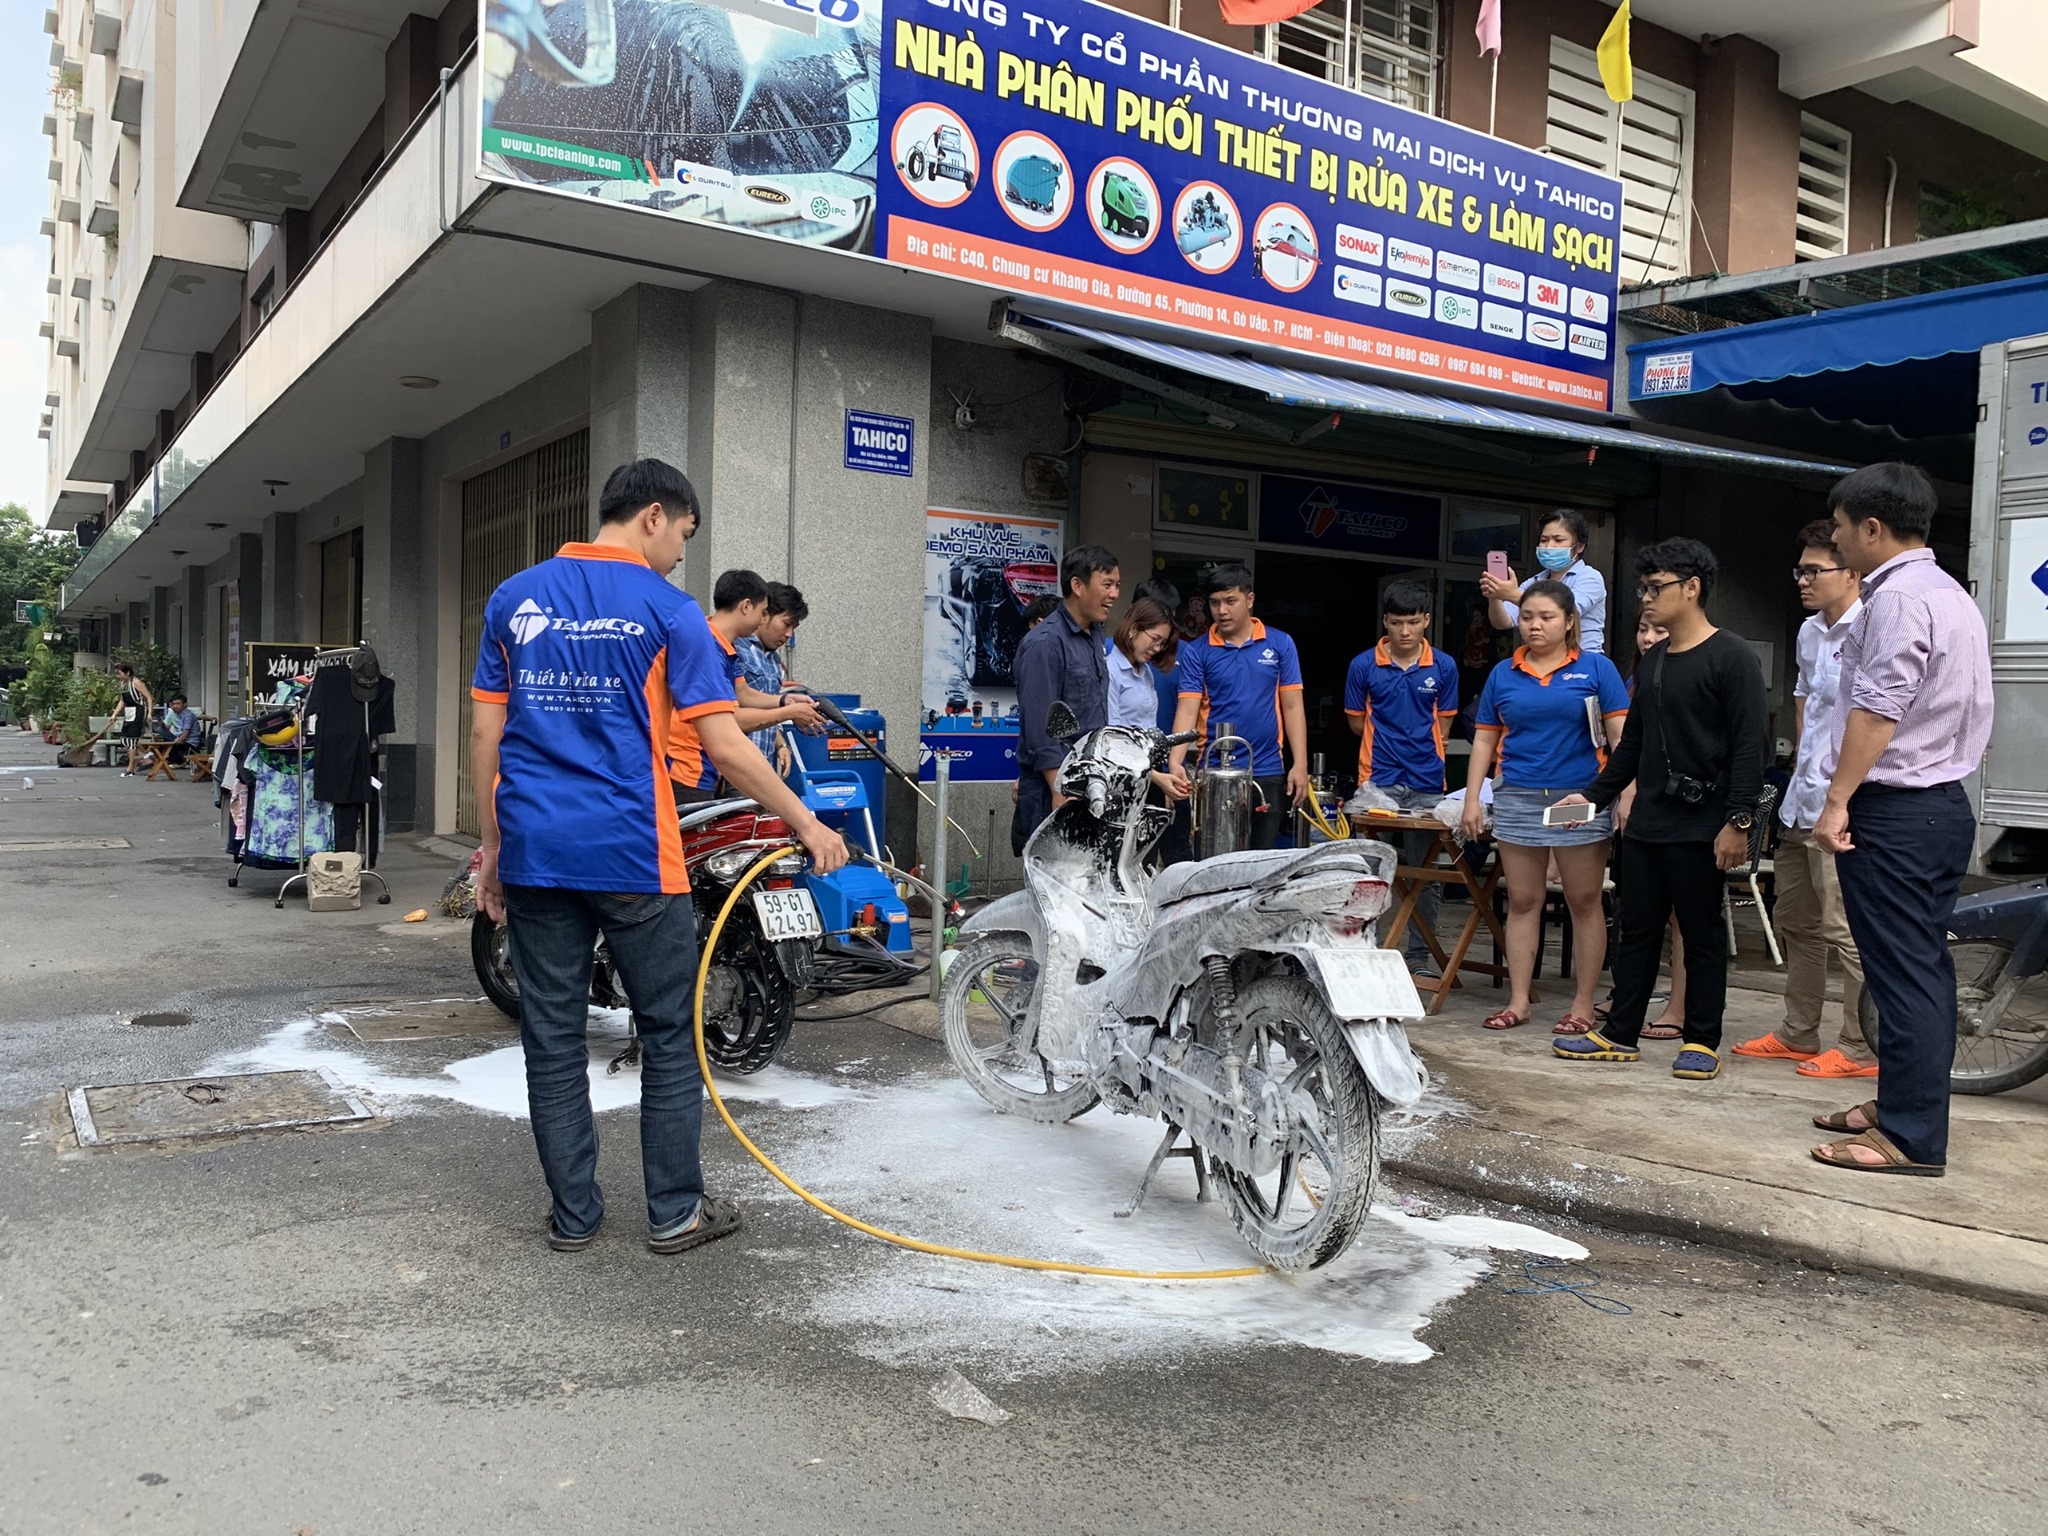 Mua thiết bị rửa xe ô tô xe máy tại Vĩnh Long siêu bền